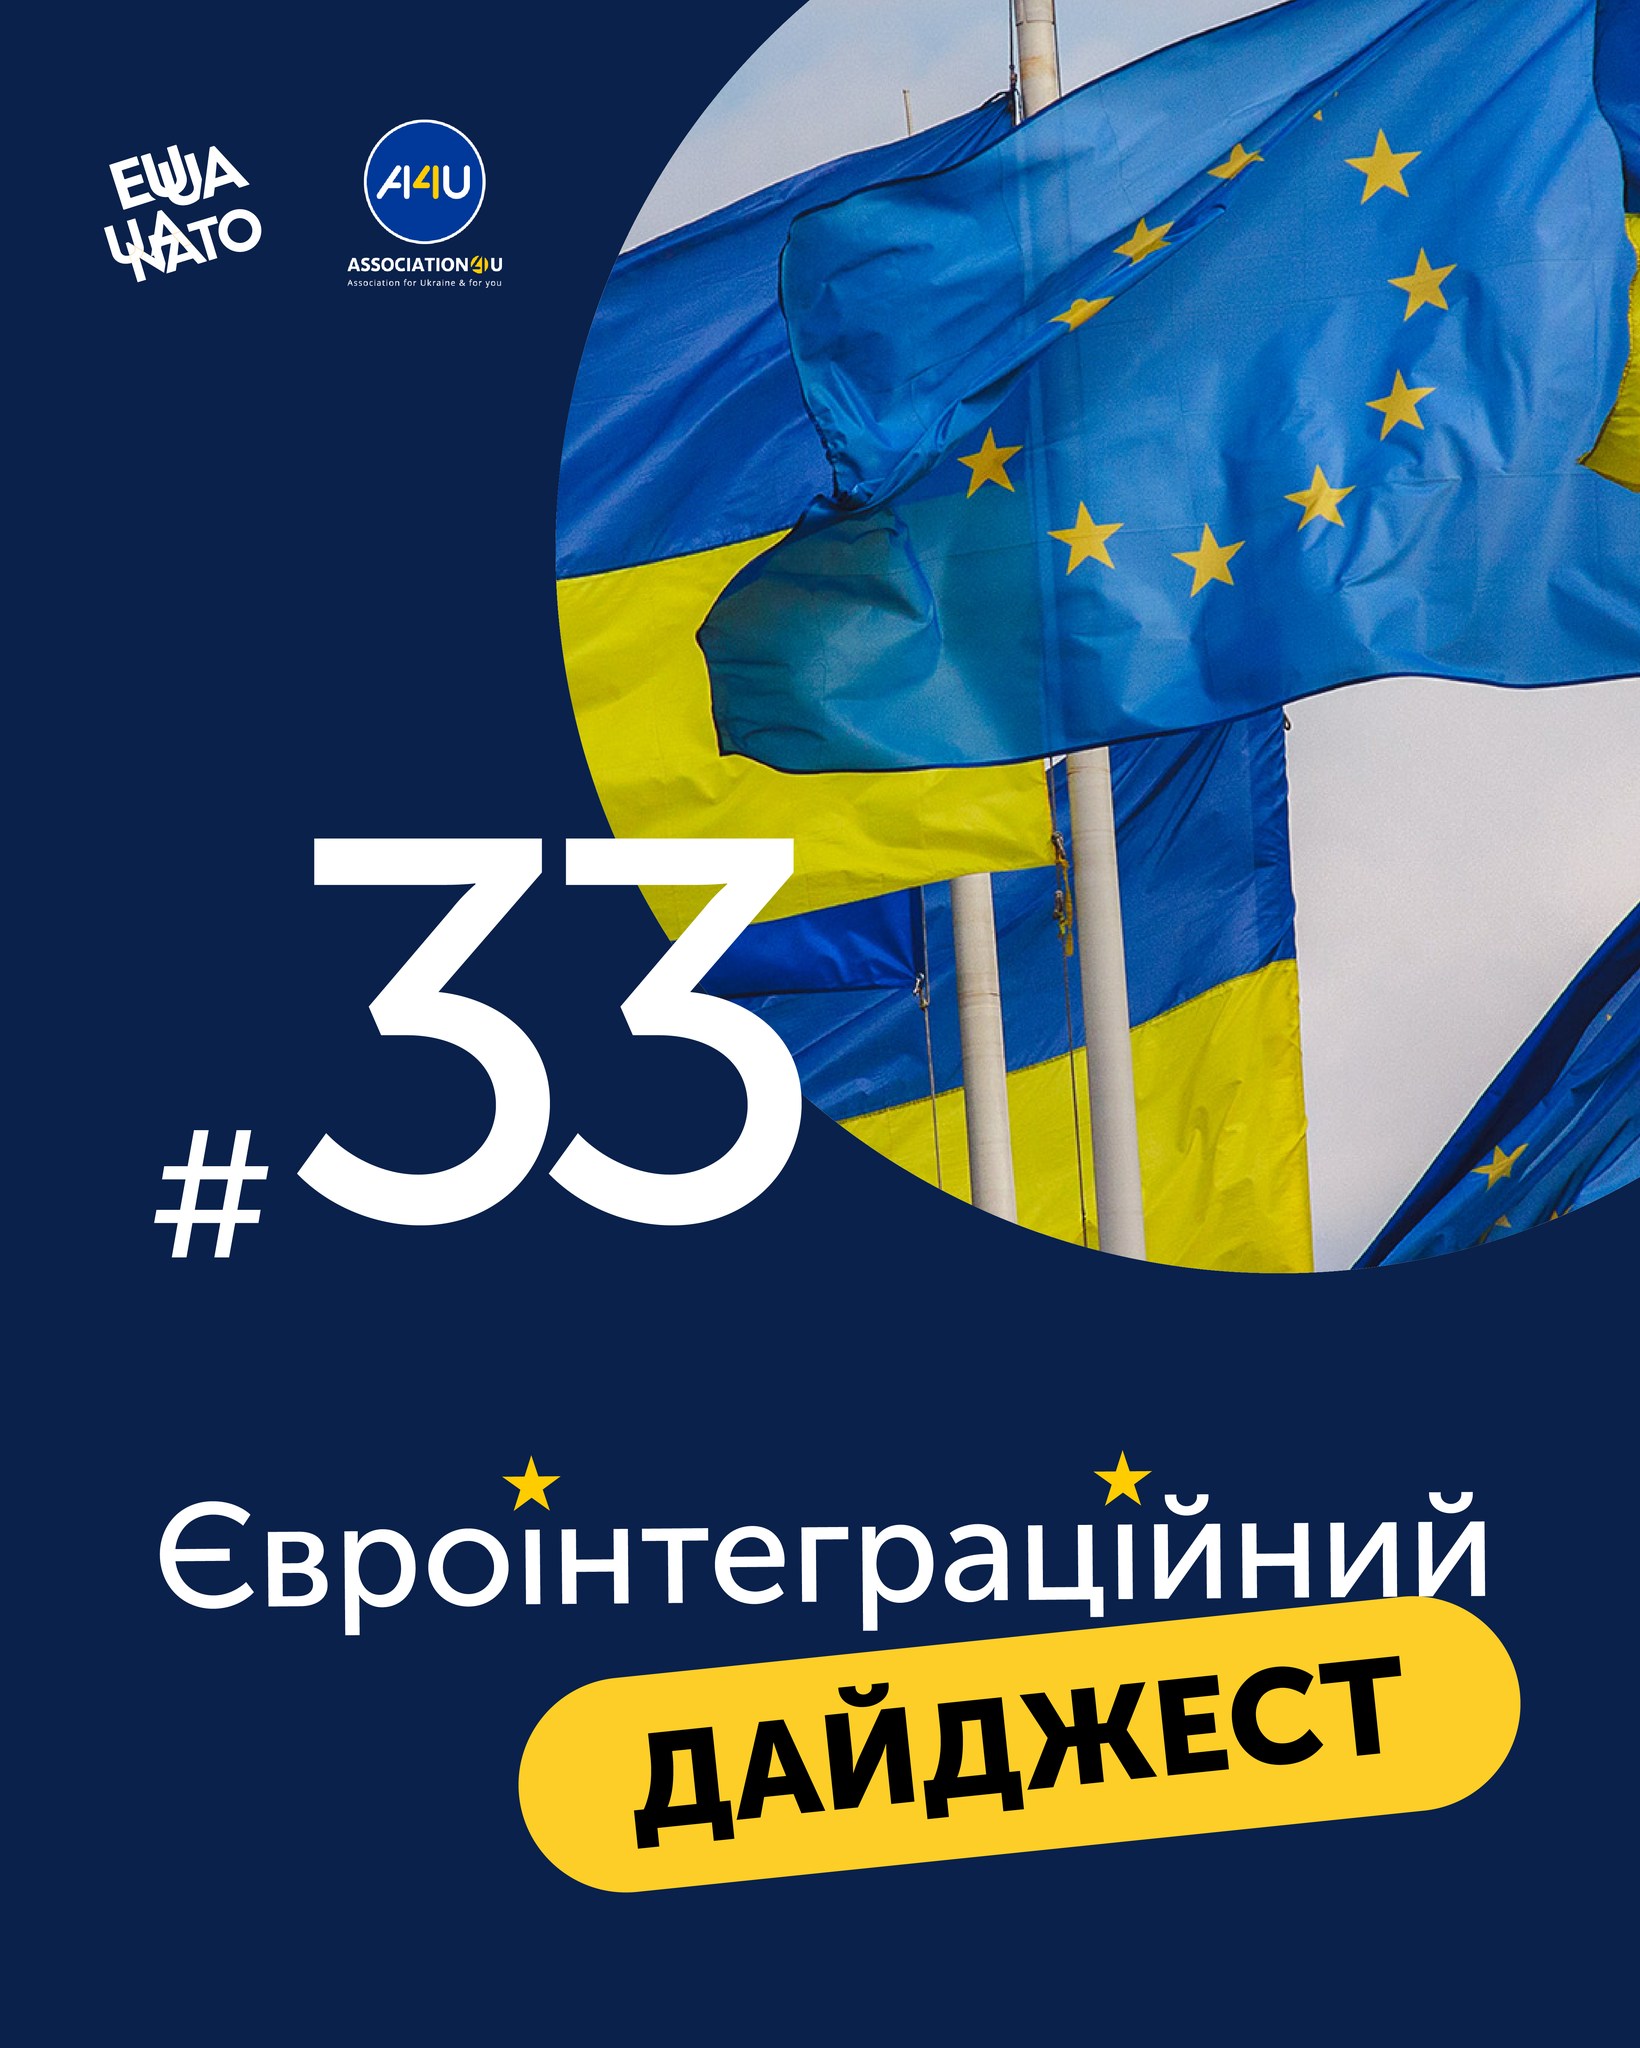 Читайте останні новини у сфері європейської інтеграції України у #Євроінтеграційний_дайджест №33  